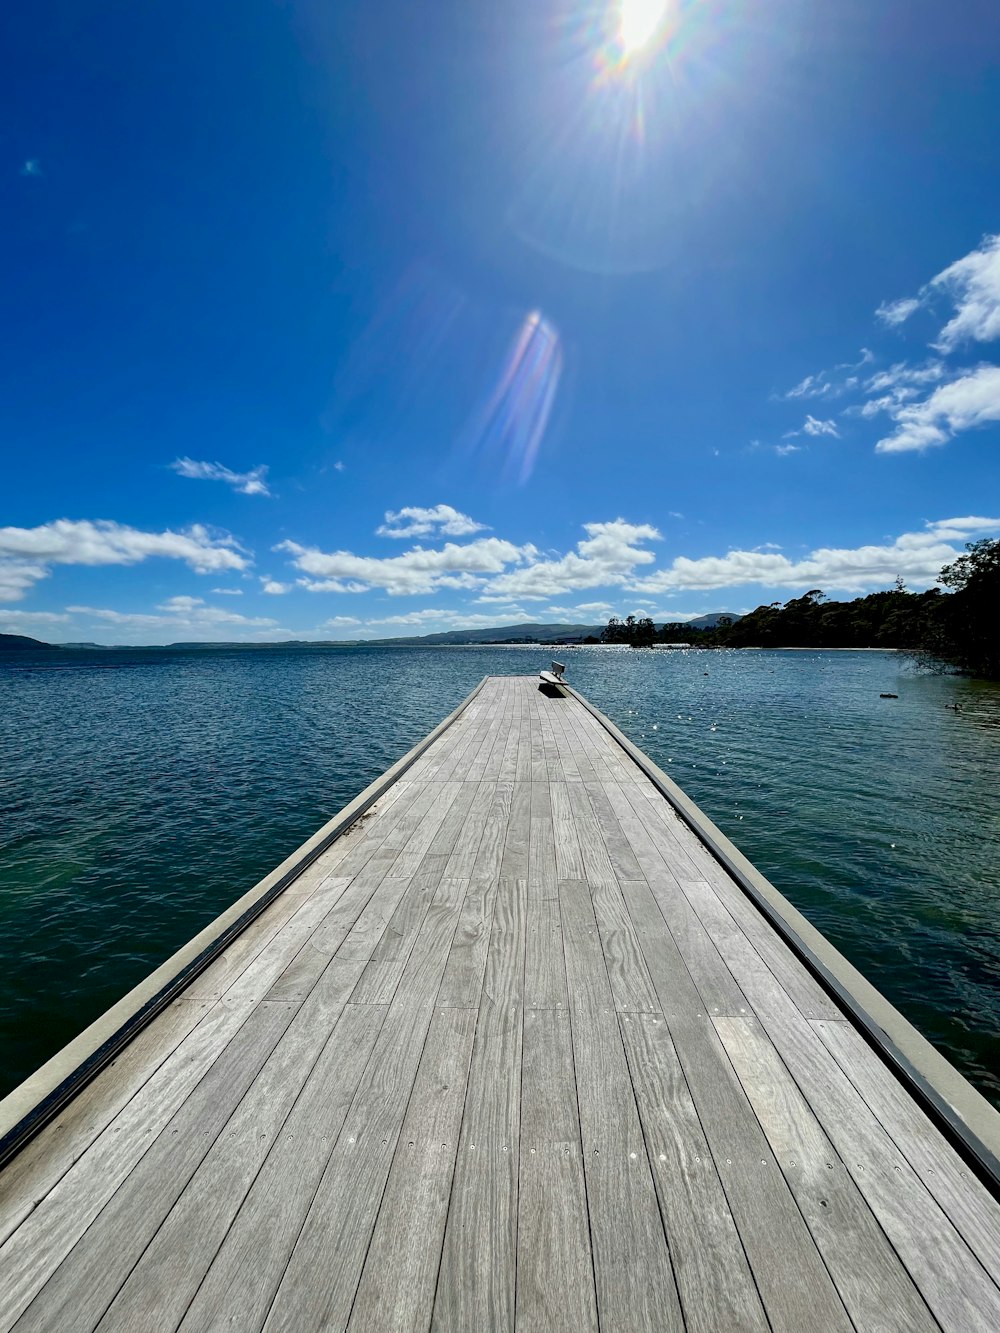 a wooden pier extending into the ocean under a blue sky